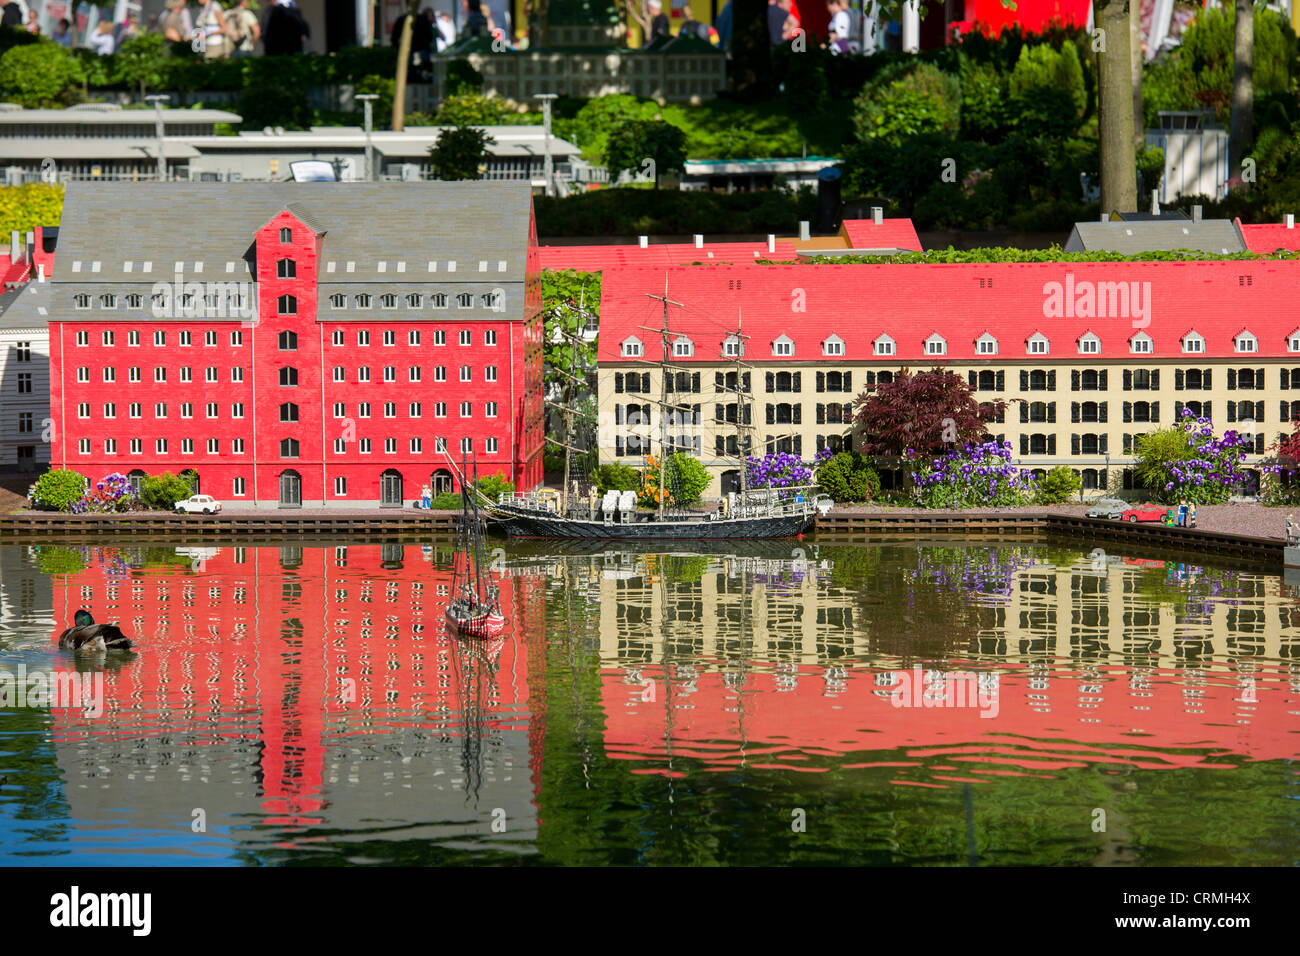 Bâtiments Lego rouge reflète dans l'eau, Miniland, Legoland, BILLUND, Danemark Banque D'Images